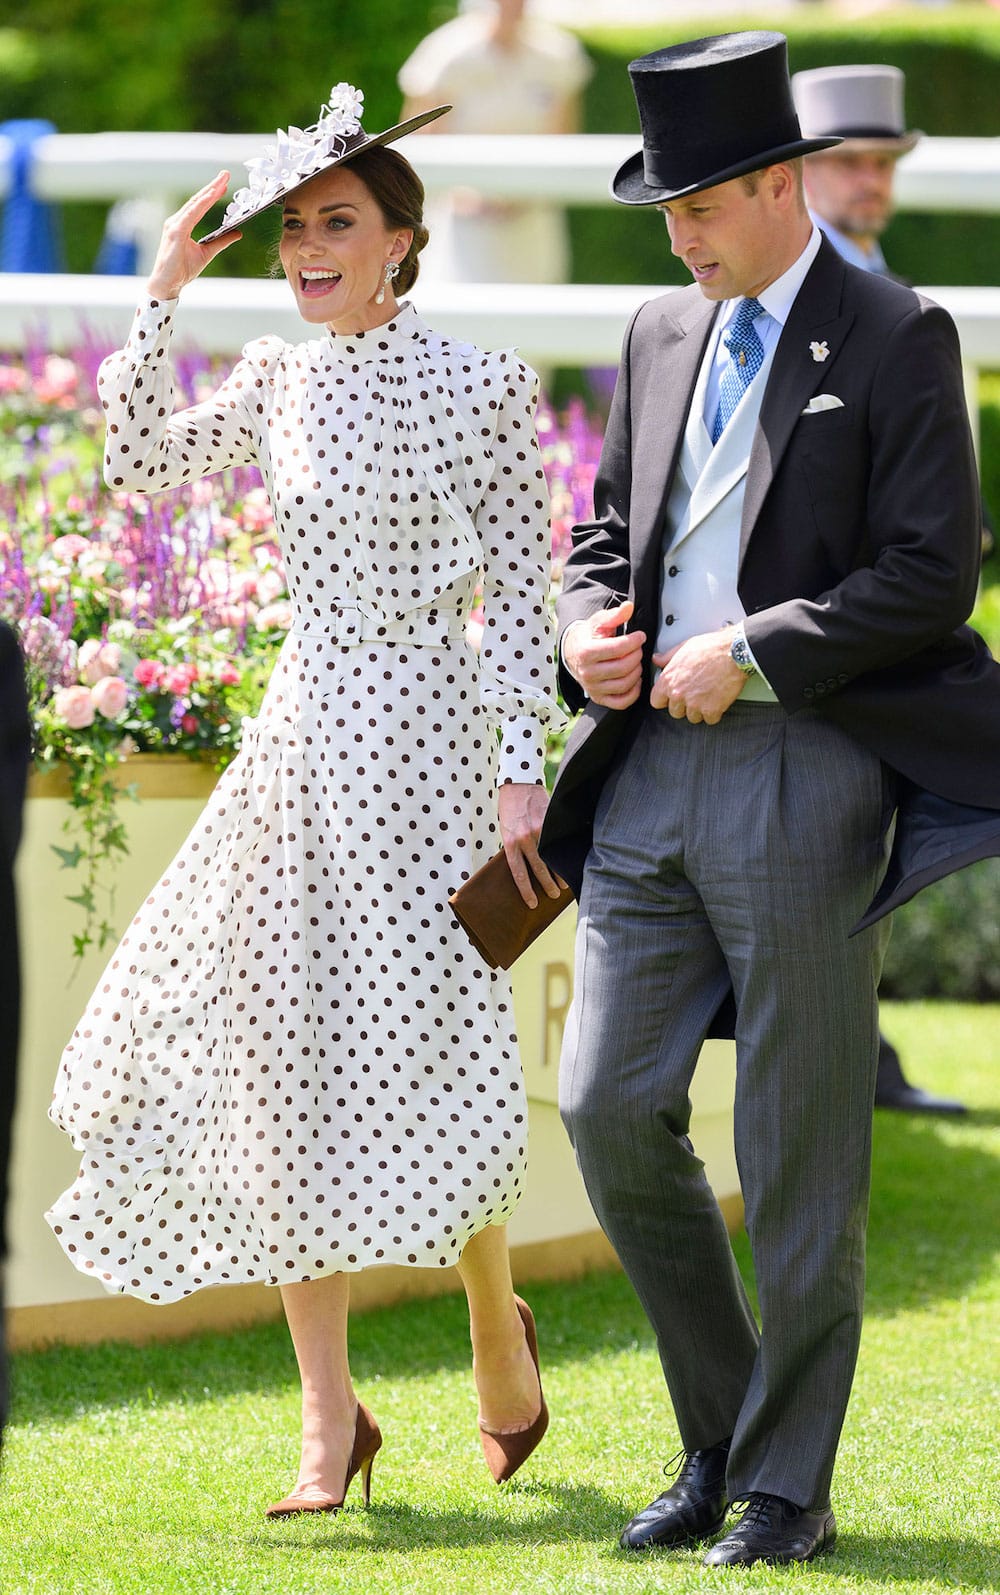 Kate Middleton Recreates Princess Diana Style for The Royal Ascot 2022